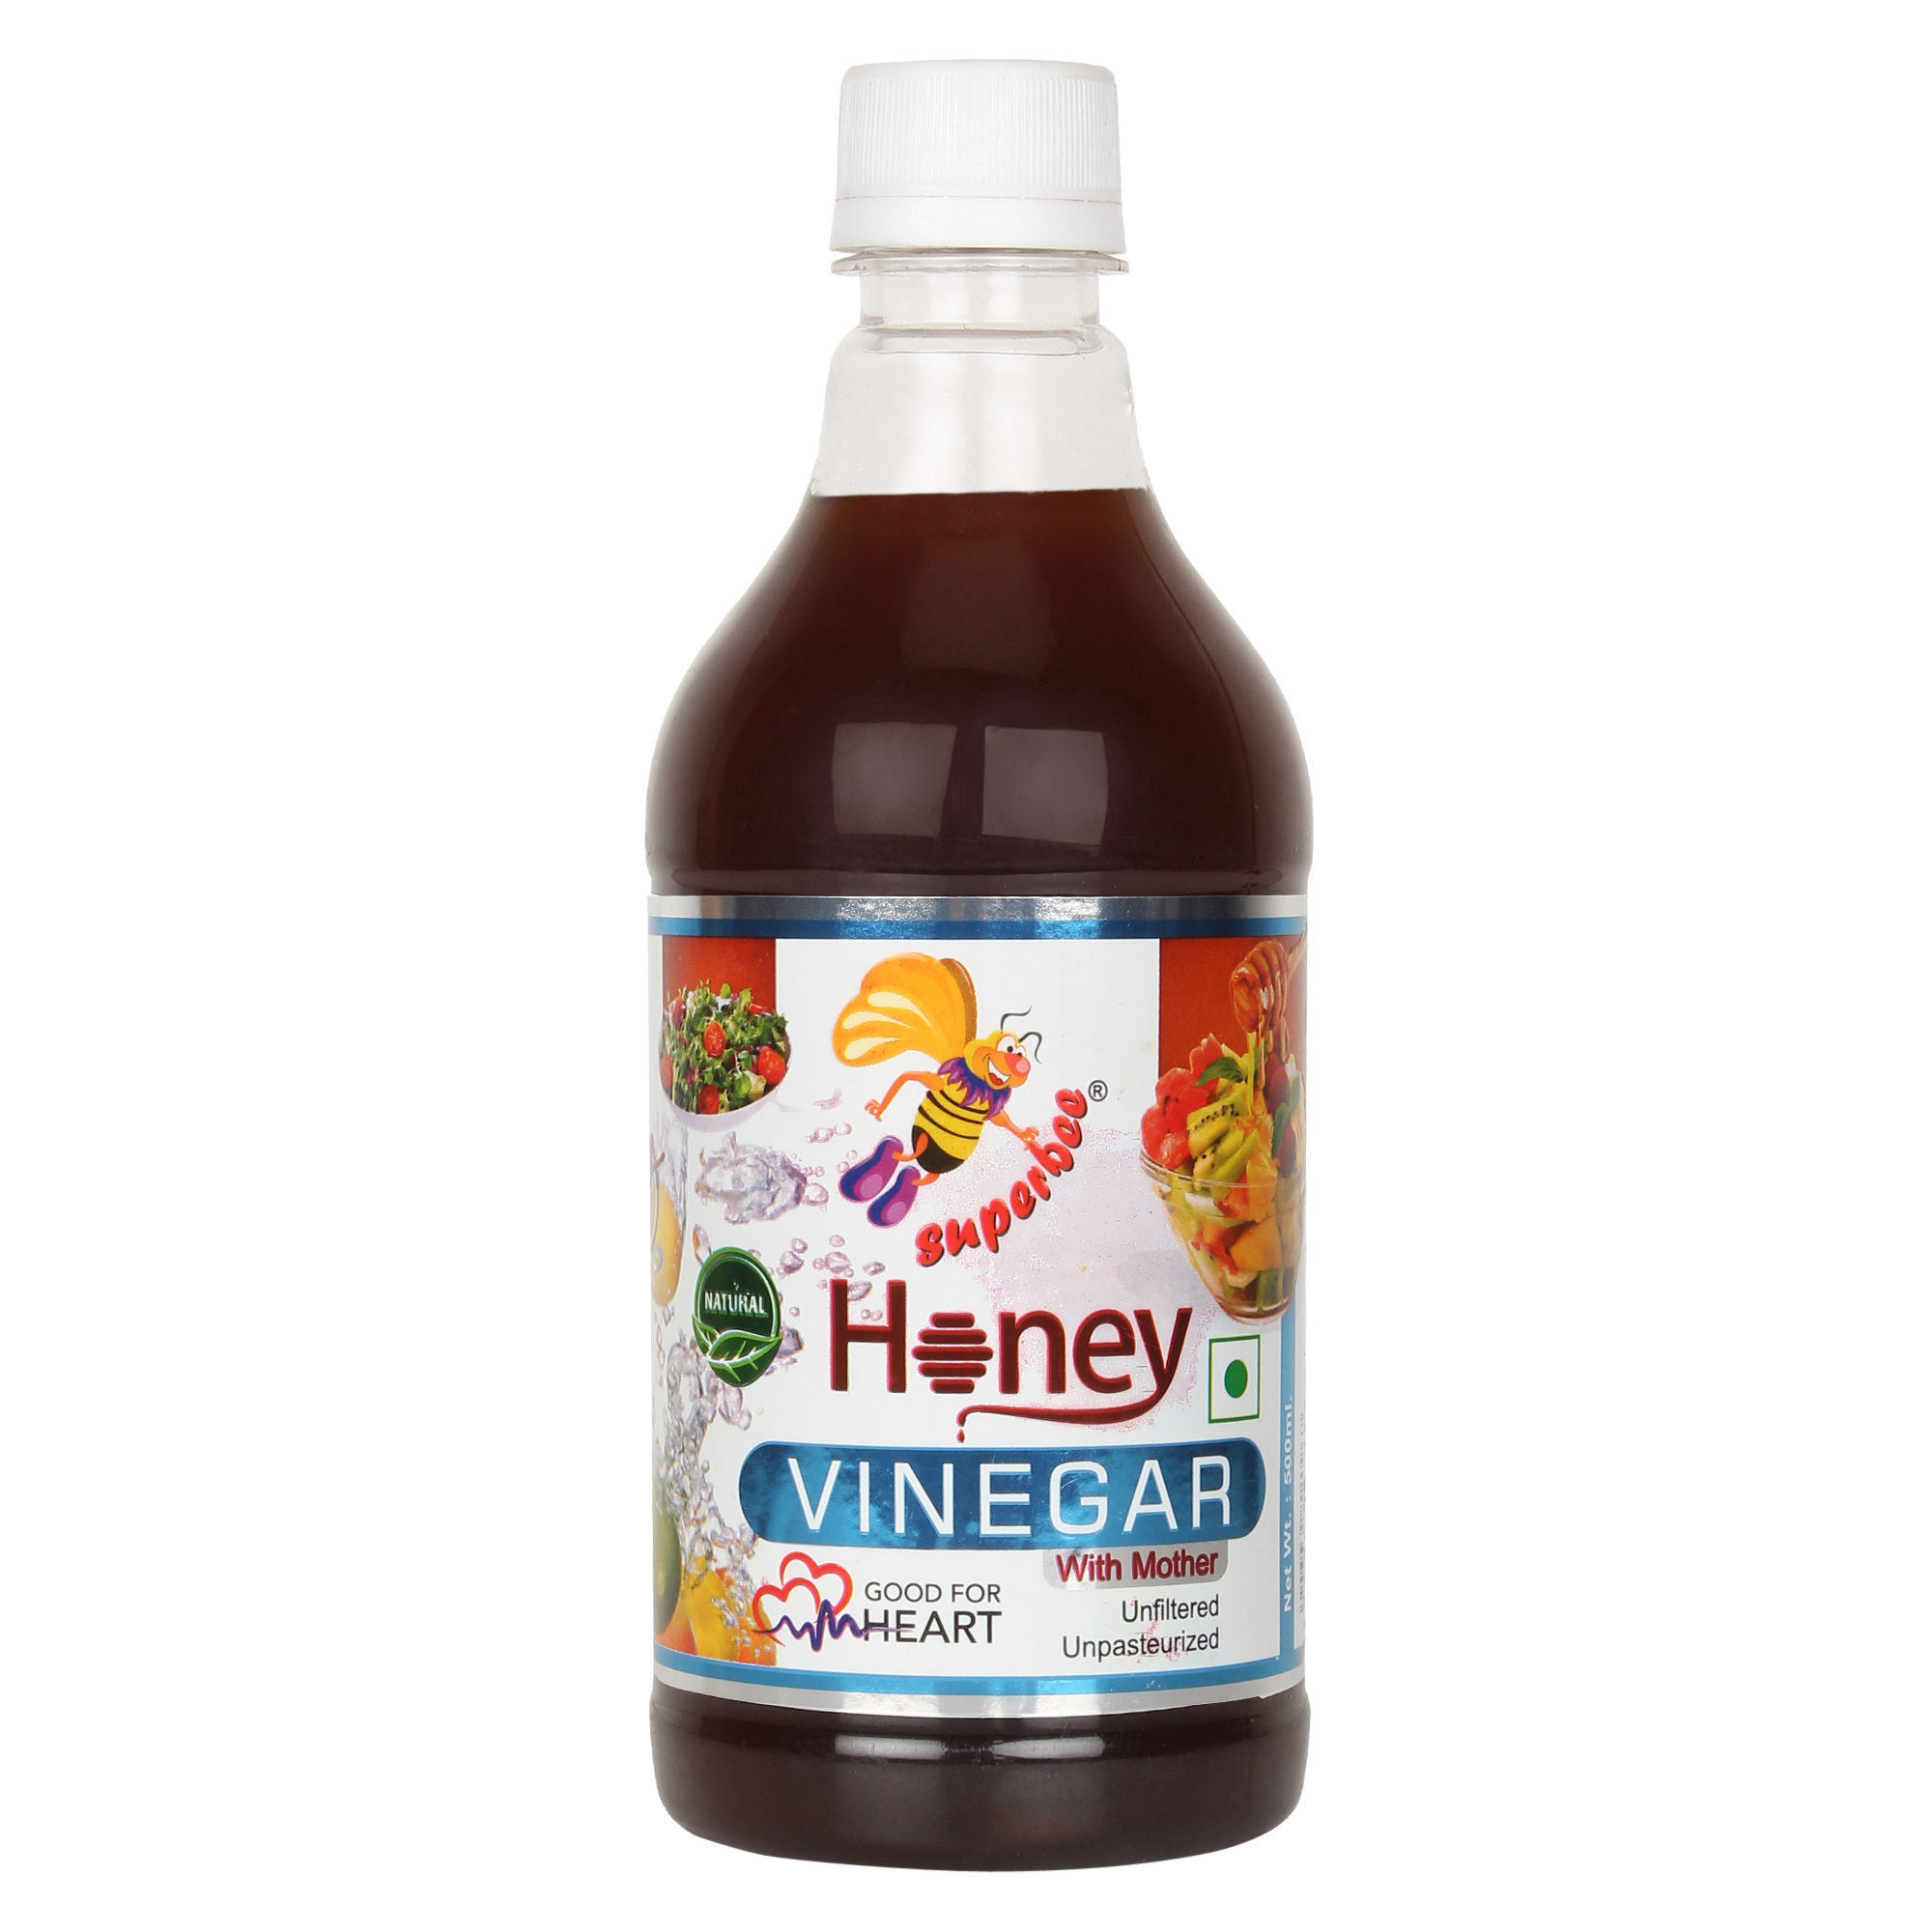 Honey vinegar